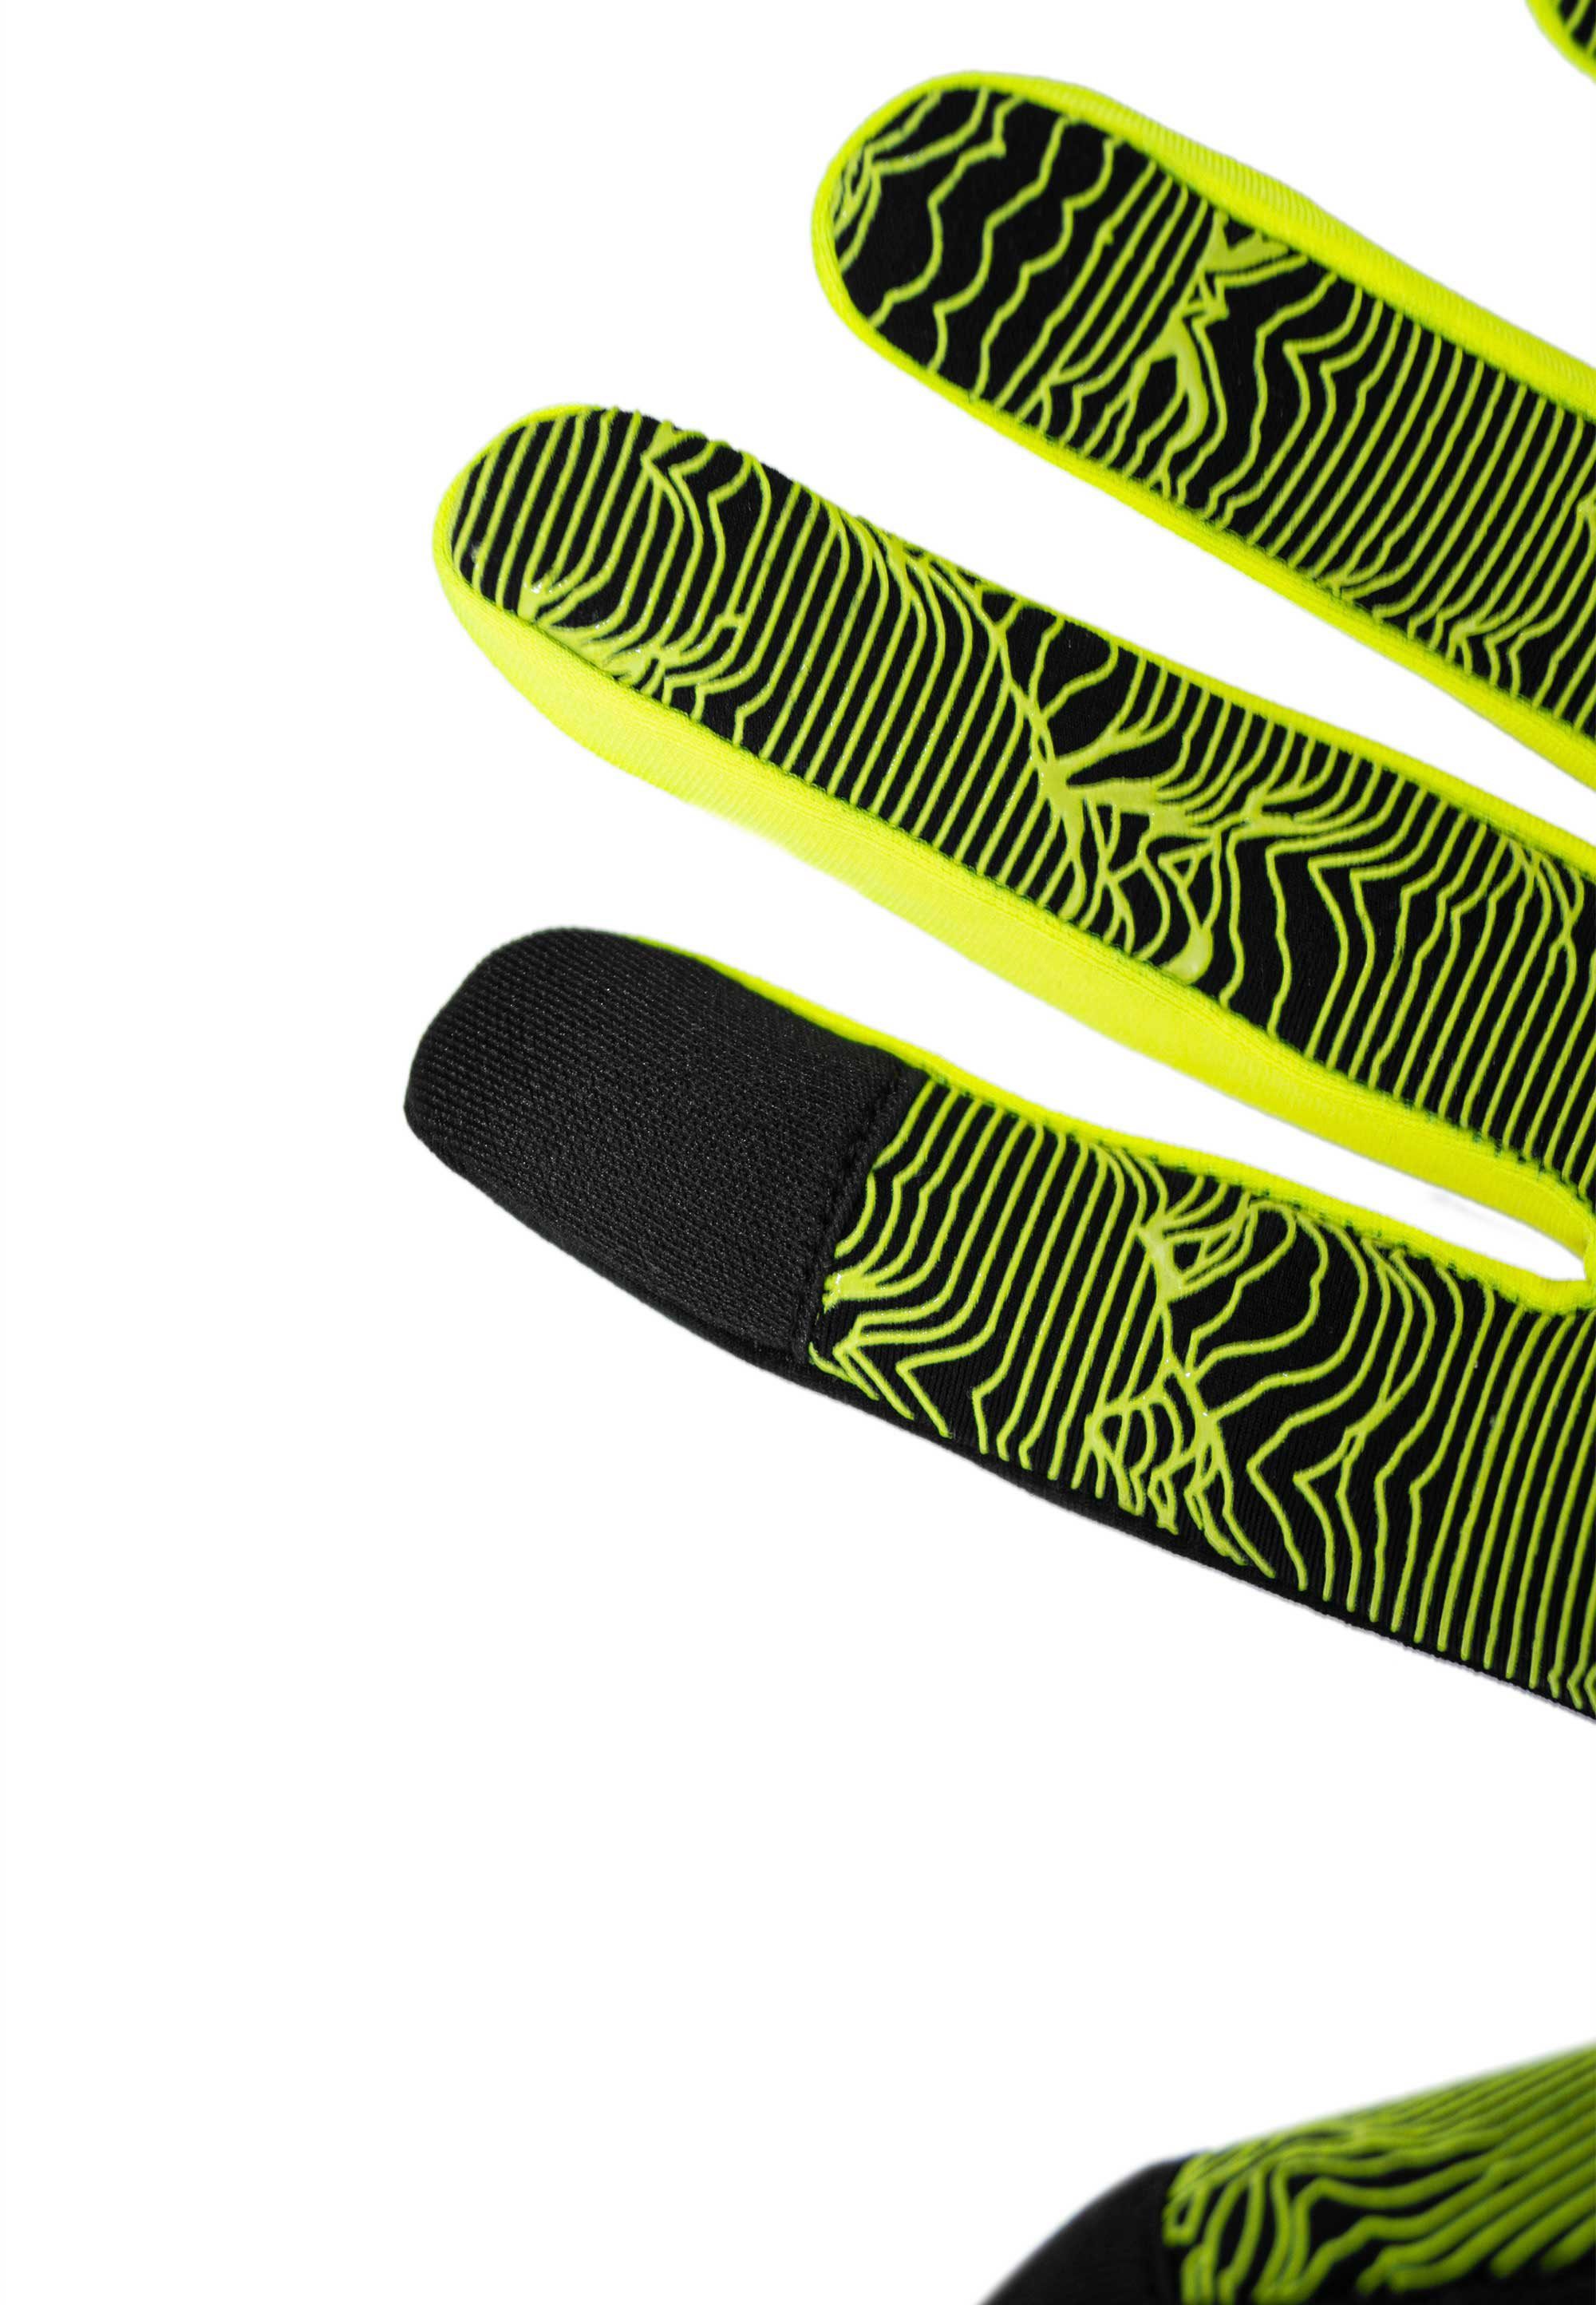 Liam praktischer Touch-Funktion Reusch Skihandschuhe gelb-schwarz TOUCH-TEC™ mit